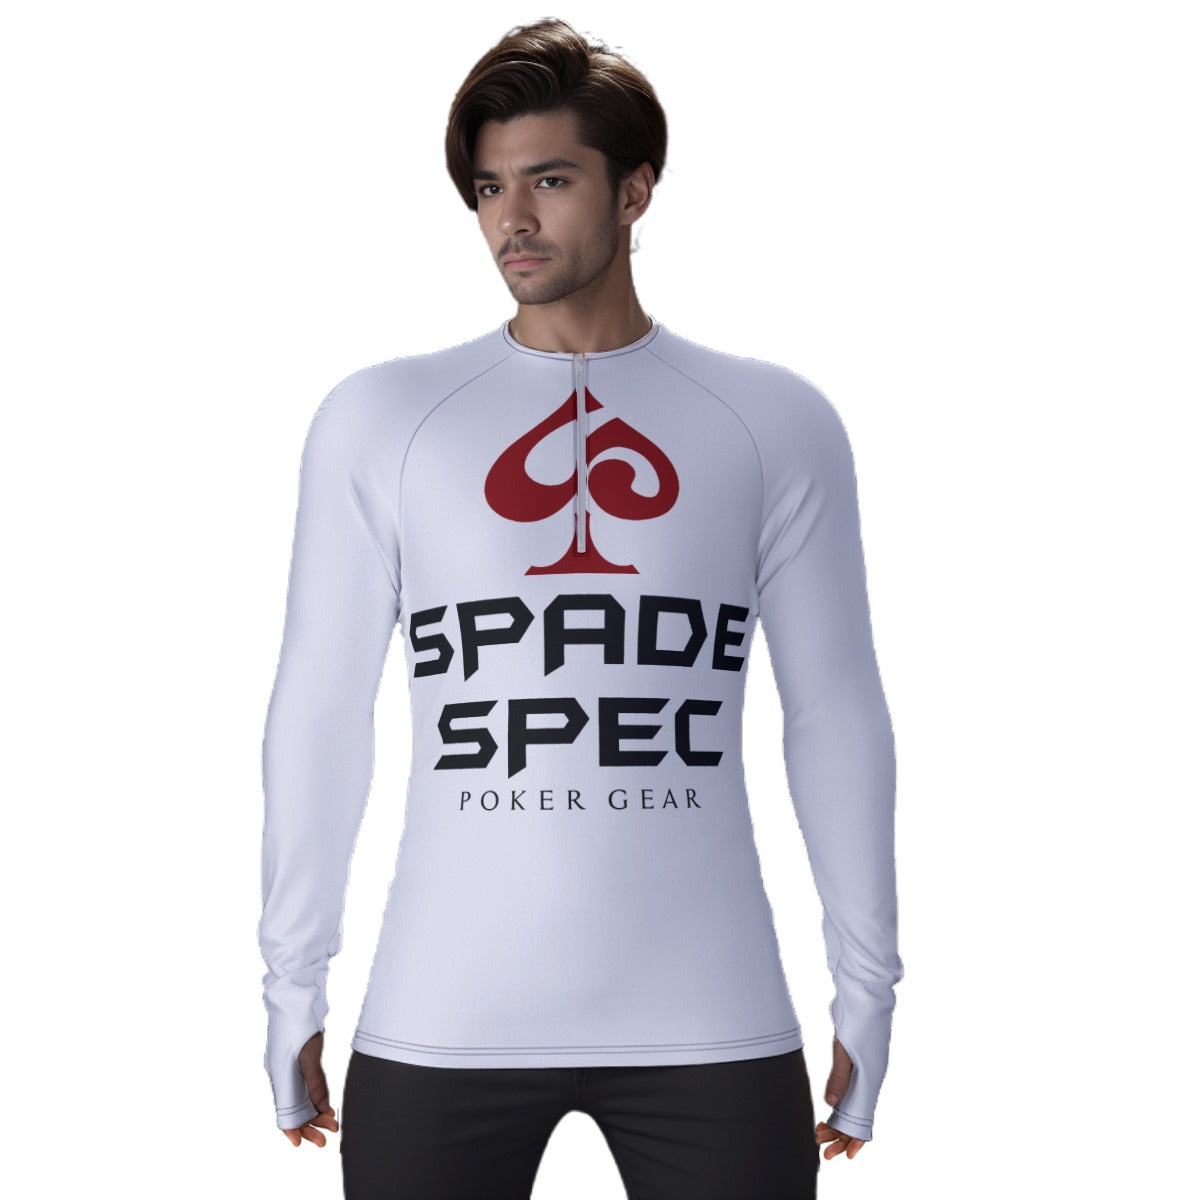 SSPG Branded Compression Shirt